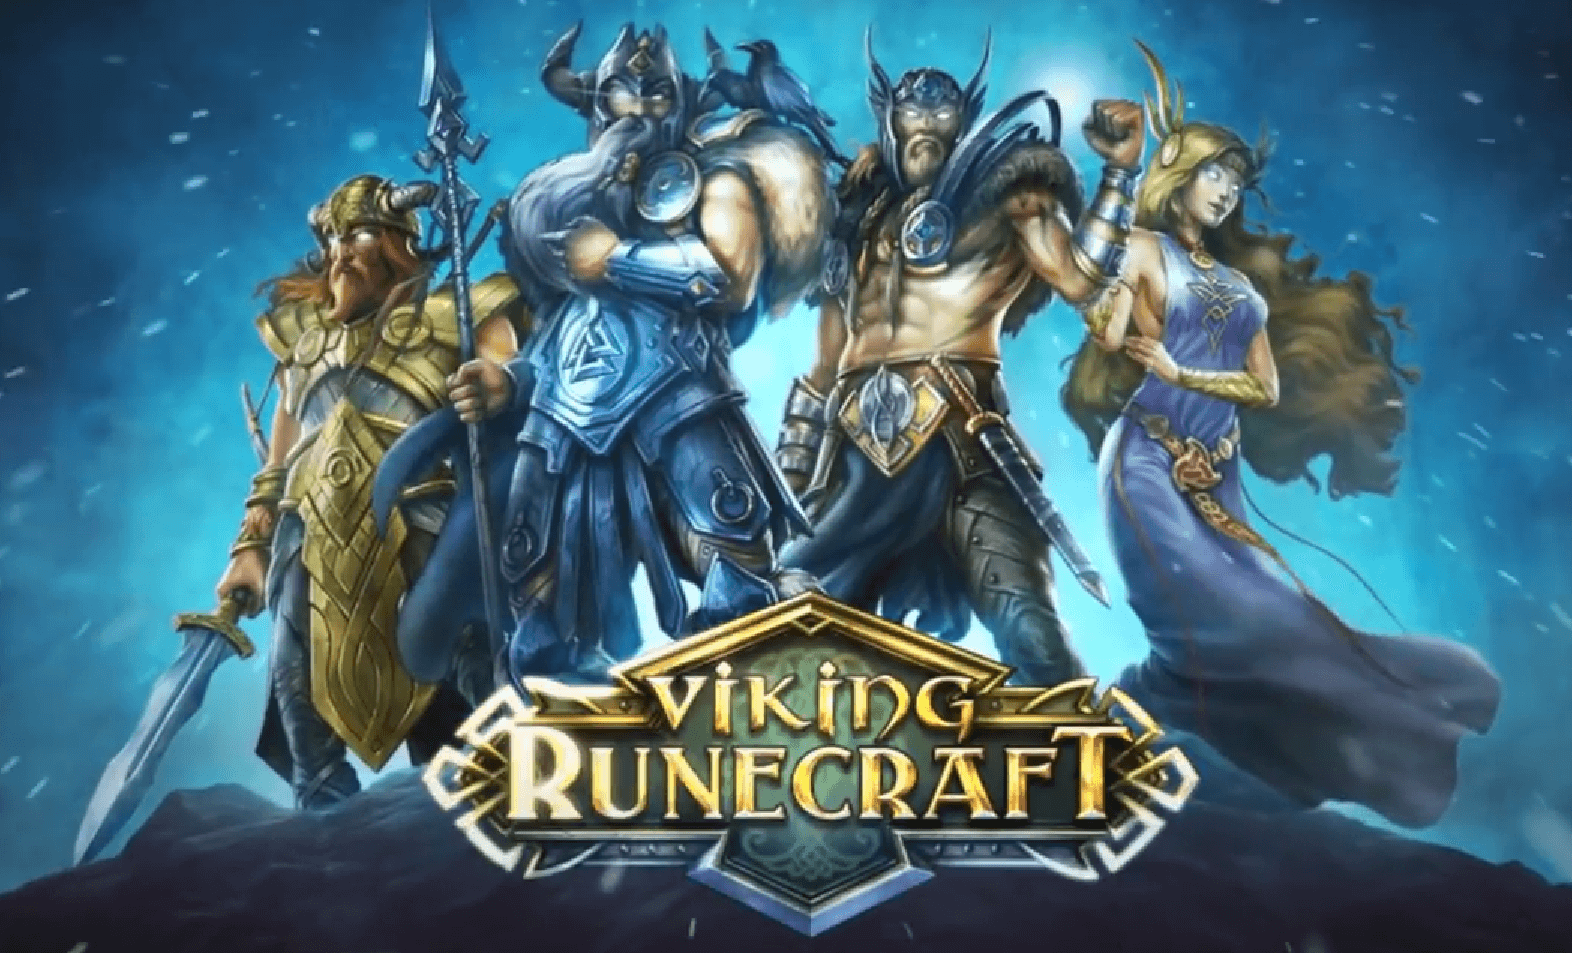 Viking Runecraft Free Play